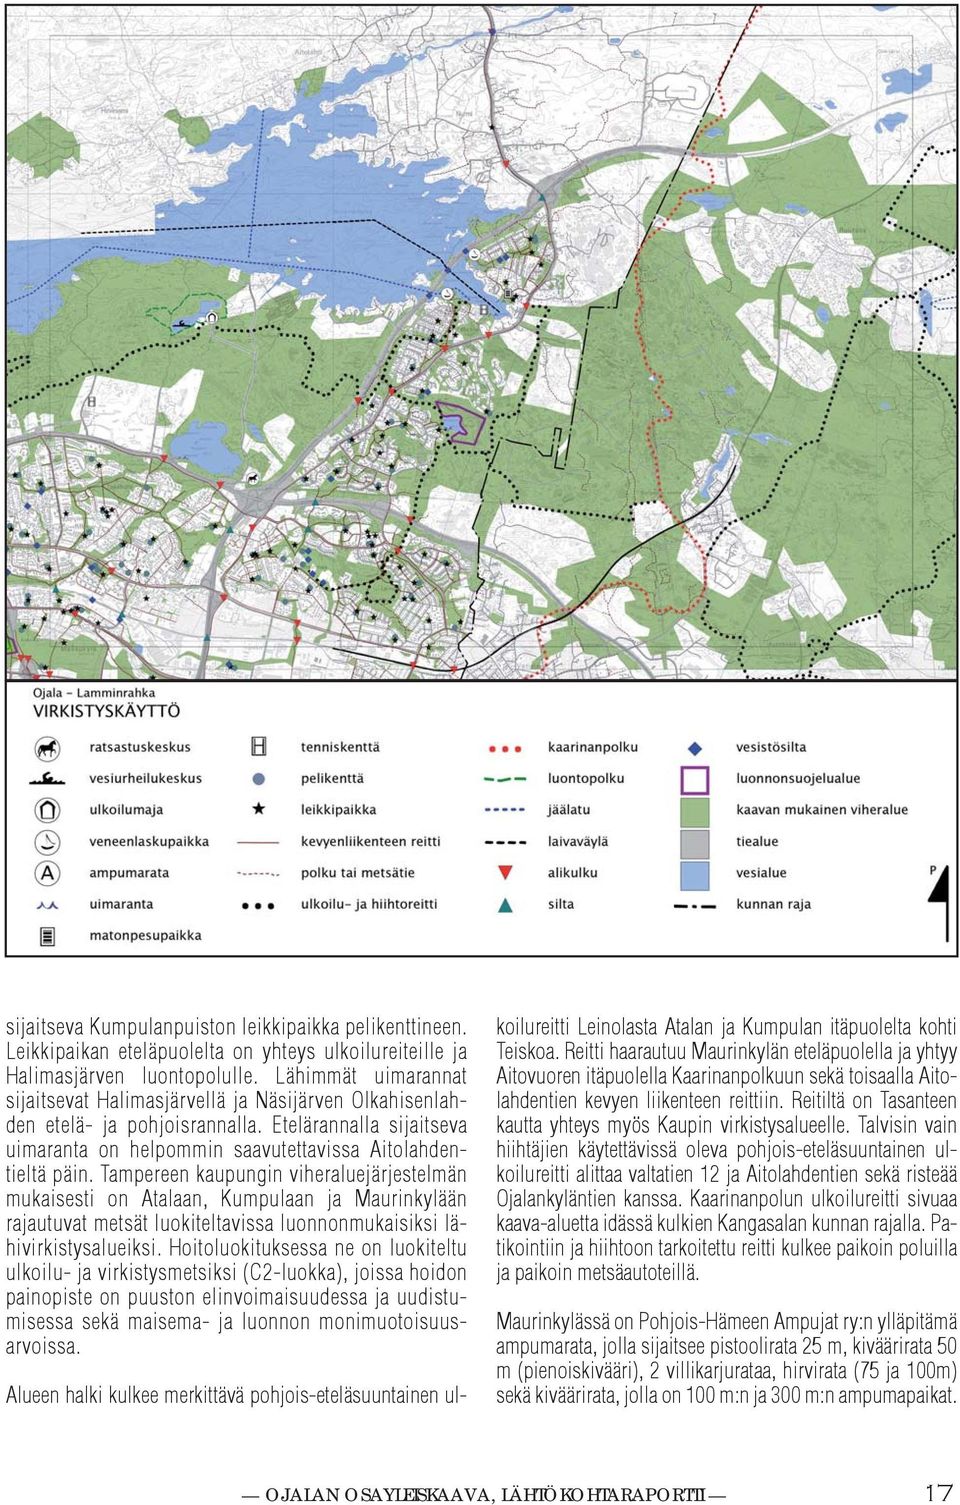 Tampereen aupungin viheraluejärjestelmän muaisesti on Atalaan, Kumpulaan ja Maurinylään rajautuvat metsät luoiteltavissa luonnonmuaisisi lähiviristysalueisi.